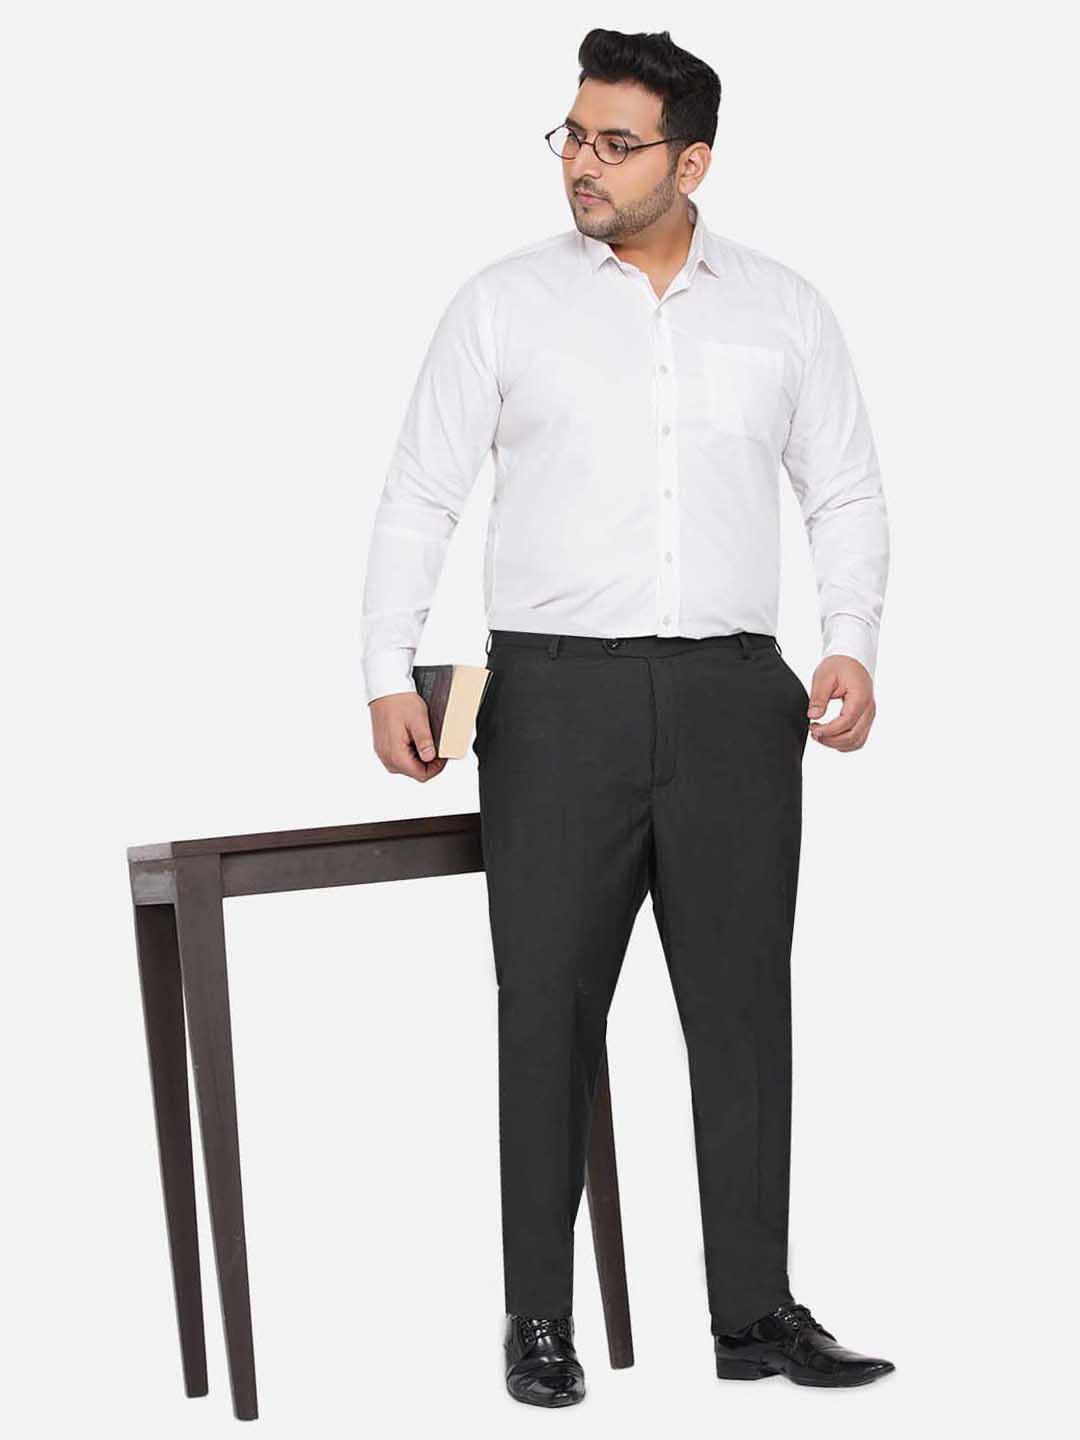 bottomwear/trousers/JPTR22010G/jptr22010g-3.jpg